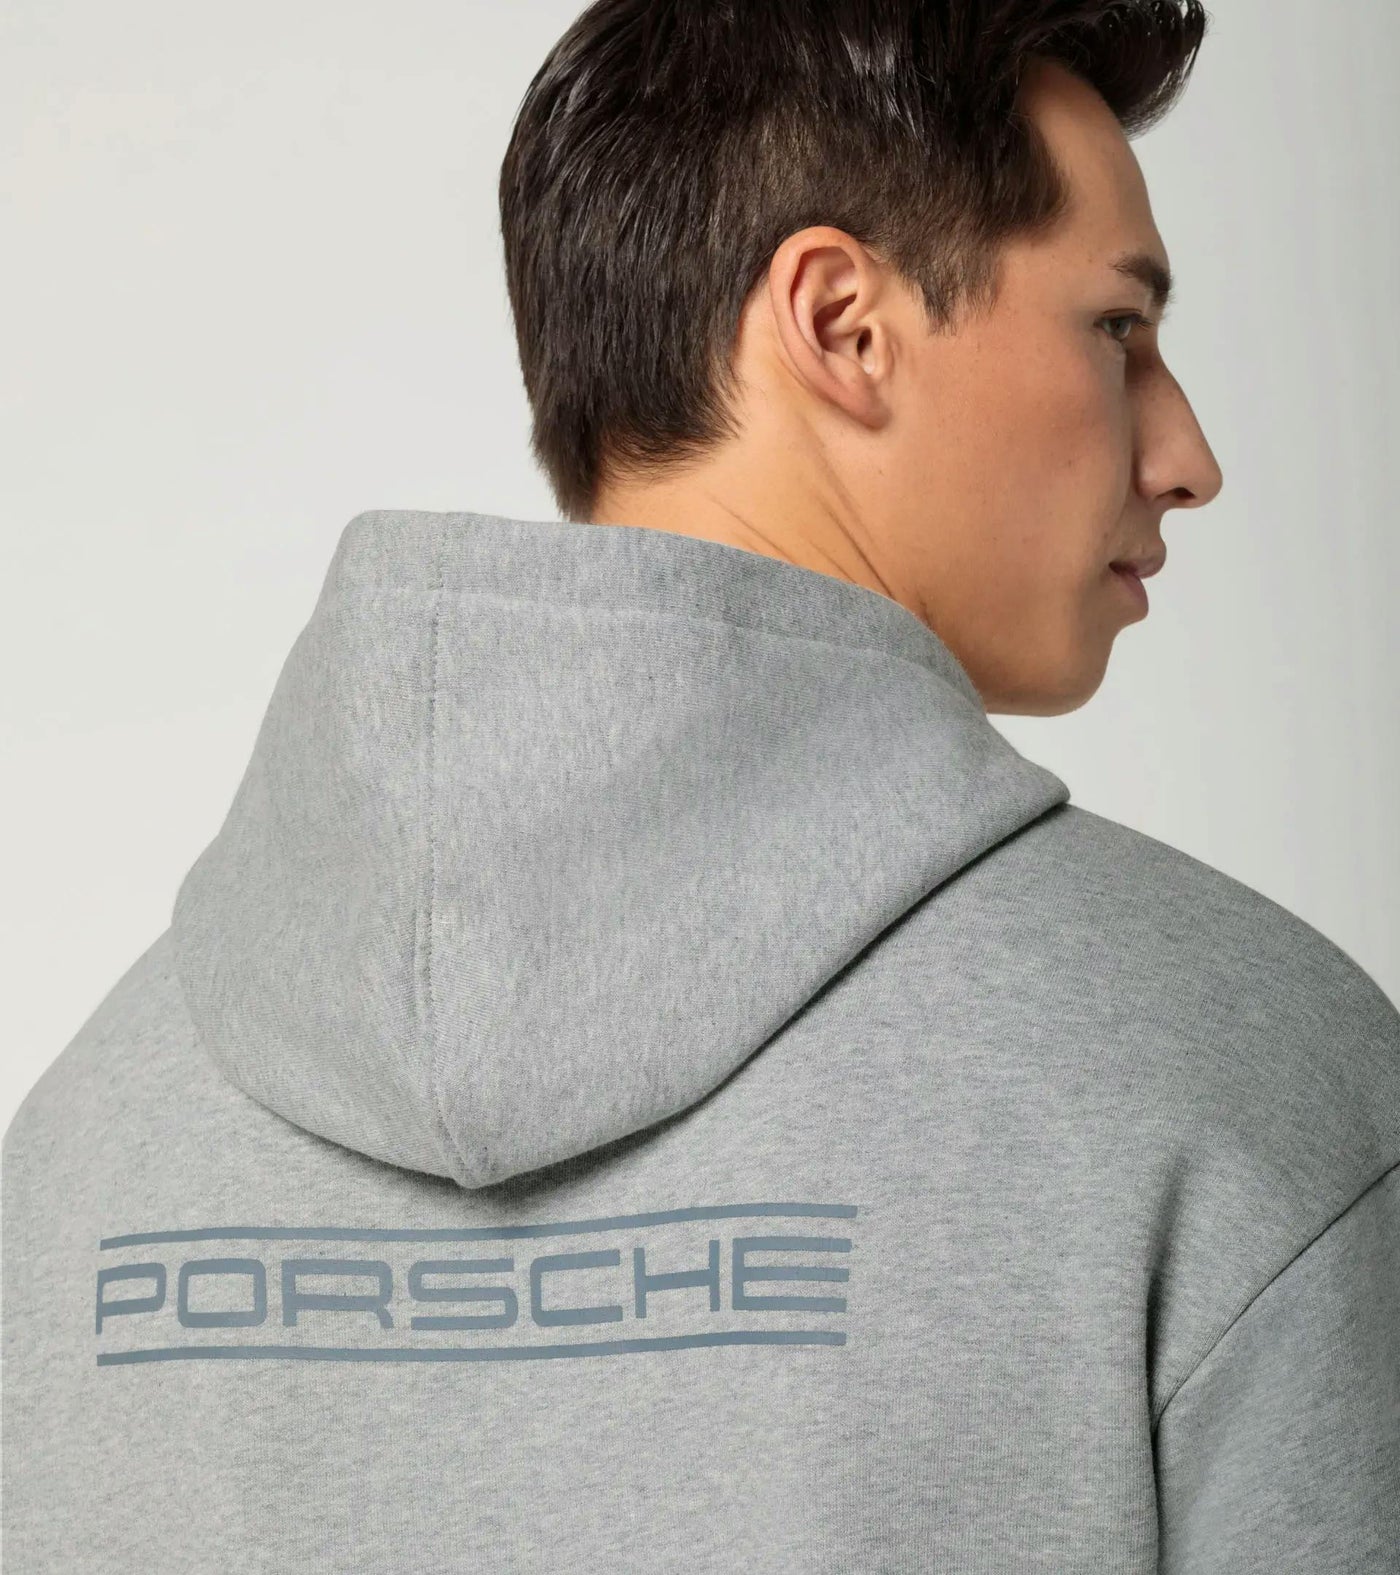 Porsche Hoodie Sweater - Martini Racing